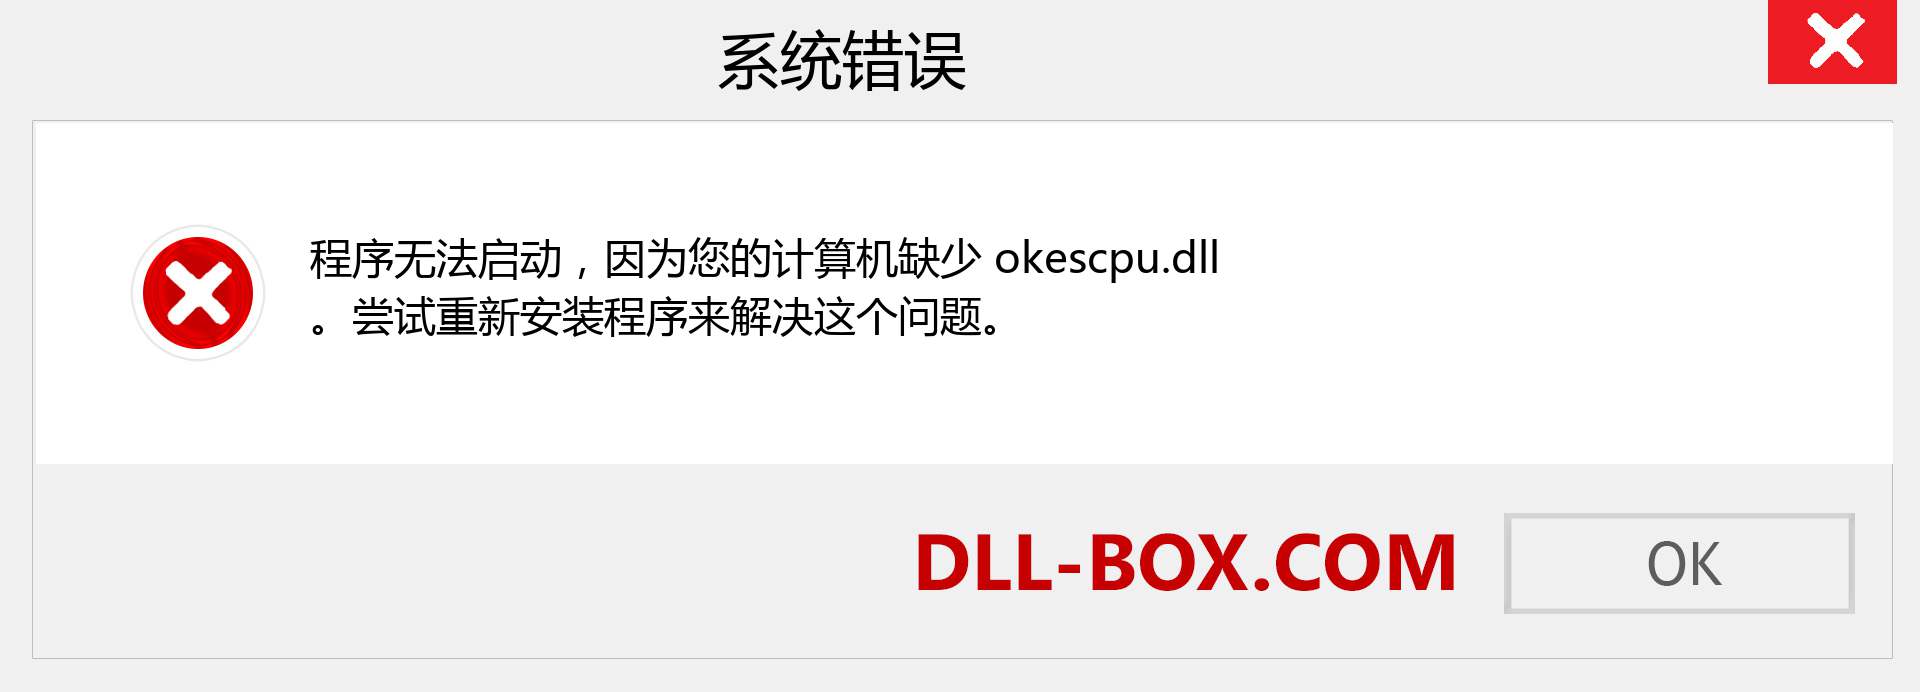 okescpu.dll 文件丢失？。 适用于 Windows 7、8、10 的下载 - 修复 Windows、照片、图像上的 okescpu dll 丢失错误